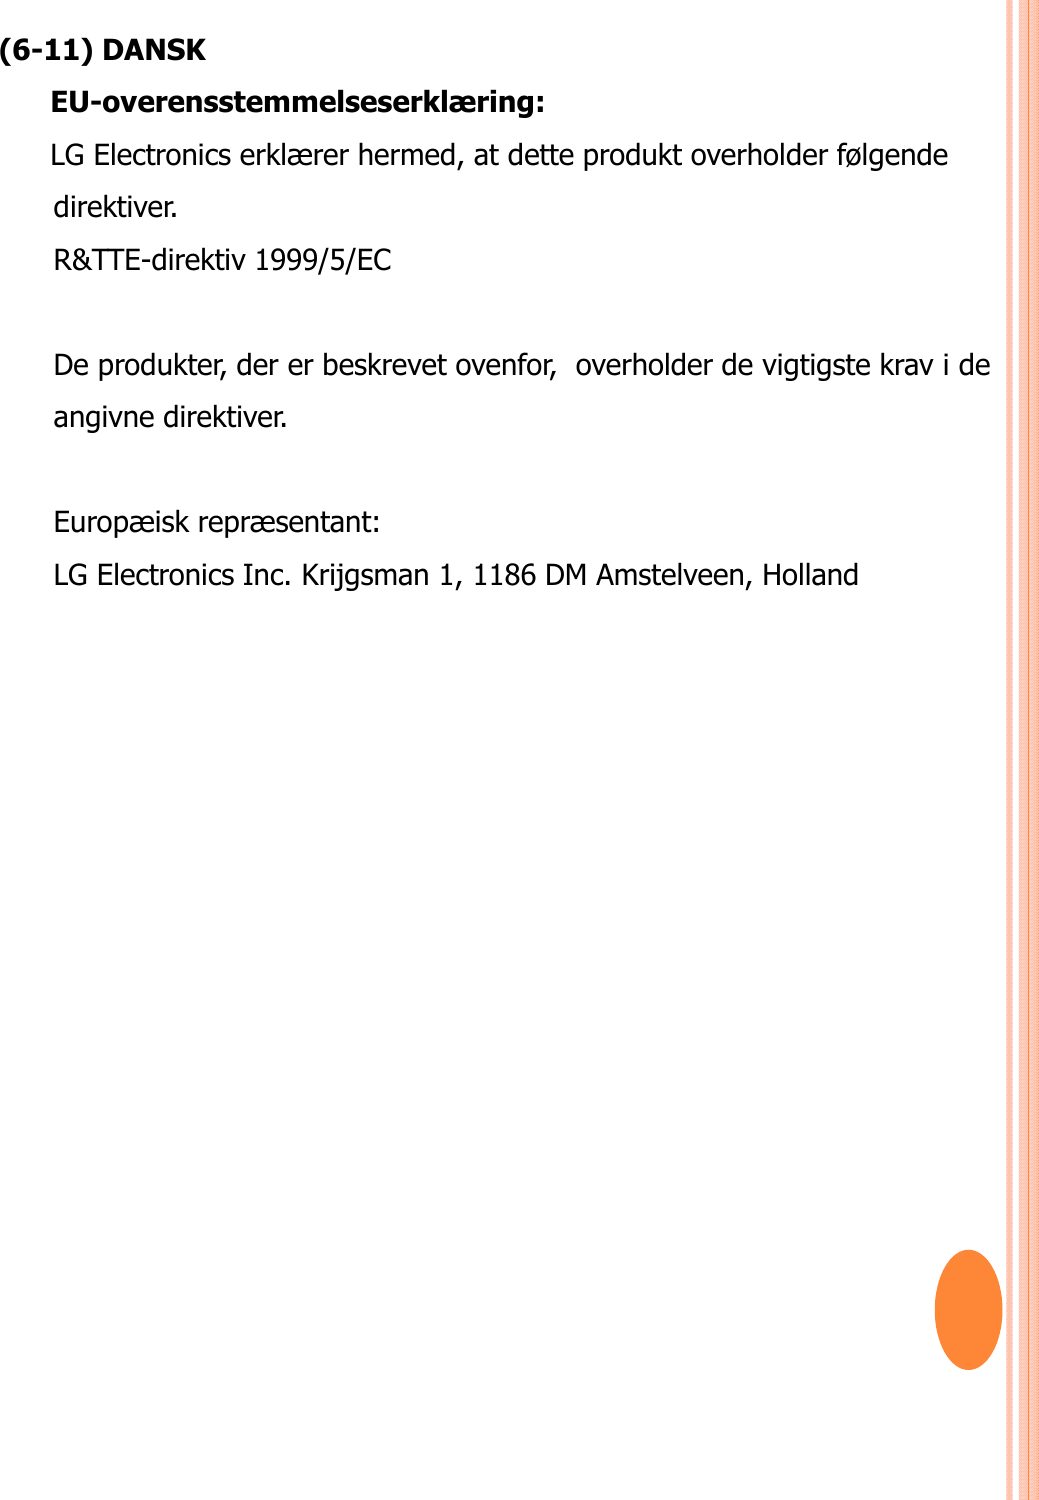 (6-11) DANSKEU-overensstemmelseserklæring: LG Electronics erklærer hermed, at dette produkt overholder følgende direktiver. R&amp;TTE-direktiv 1999/5/EC De produkter, der er beskrevet ovenfor,  overholder de vigtigste krav i de angivne direktiver. Europæisk repræsentant:LG Electronics Inc. Krijgsman 1, 1186 DM Amstelveen, Holland